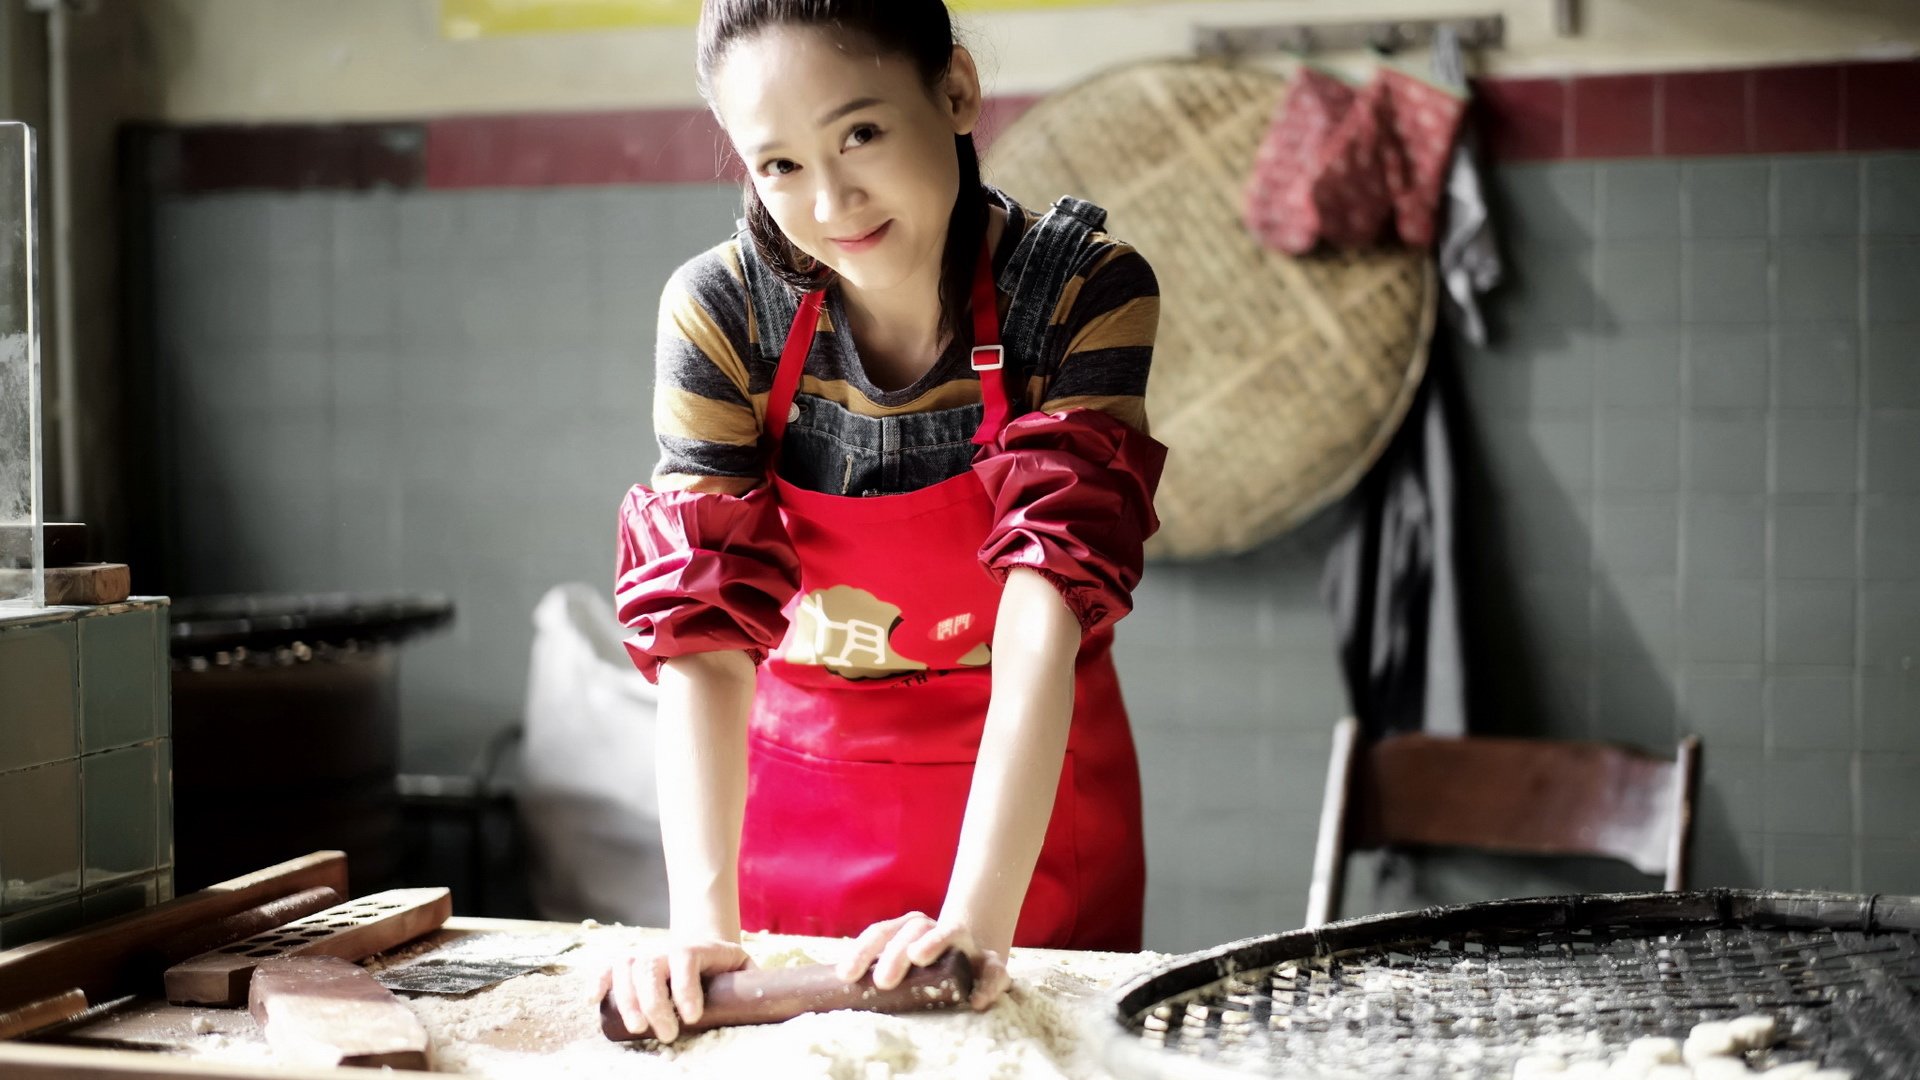 Phim Hàn 'Người yêu dấu' mùa 1 kết thúc dang dở với rating kỷ lục